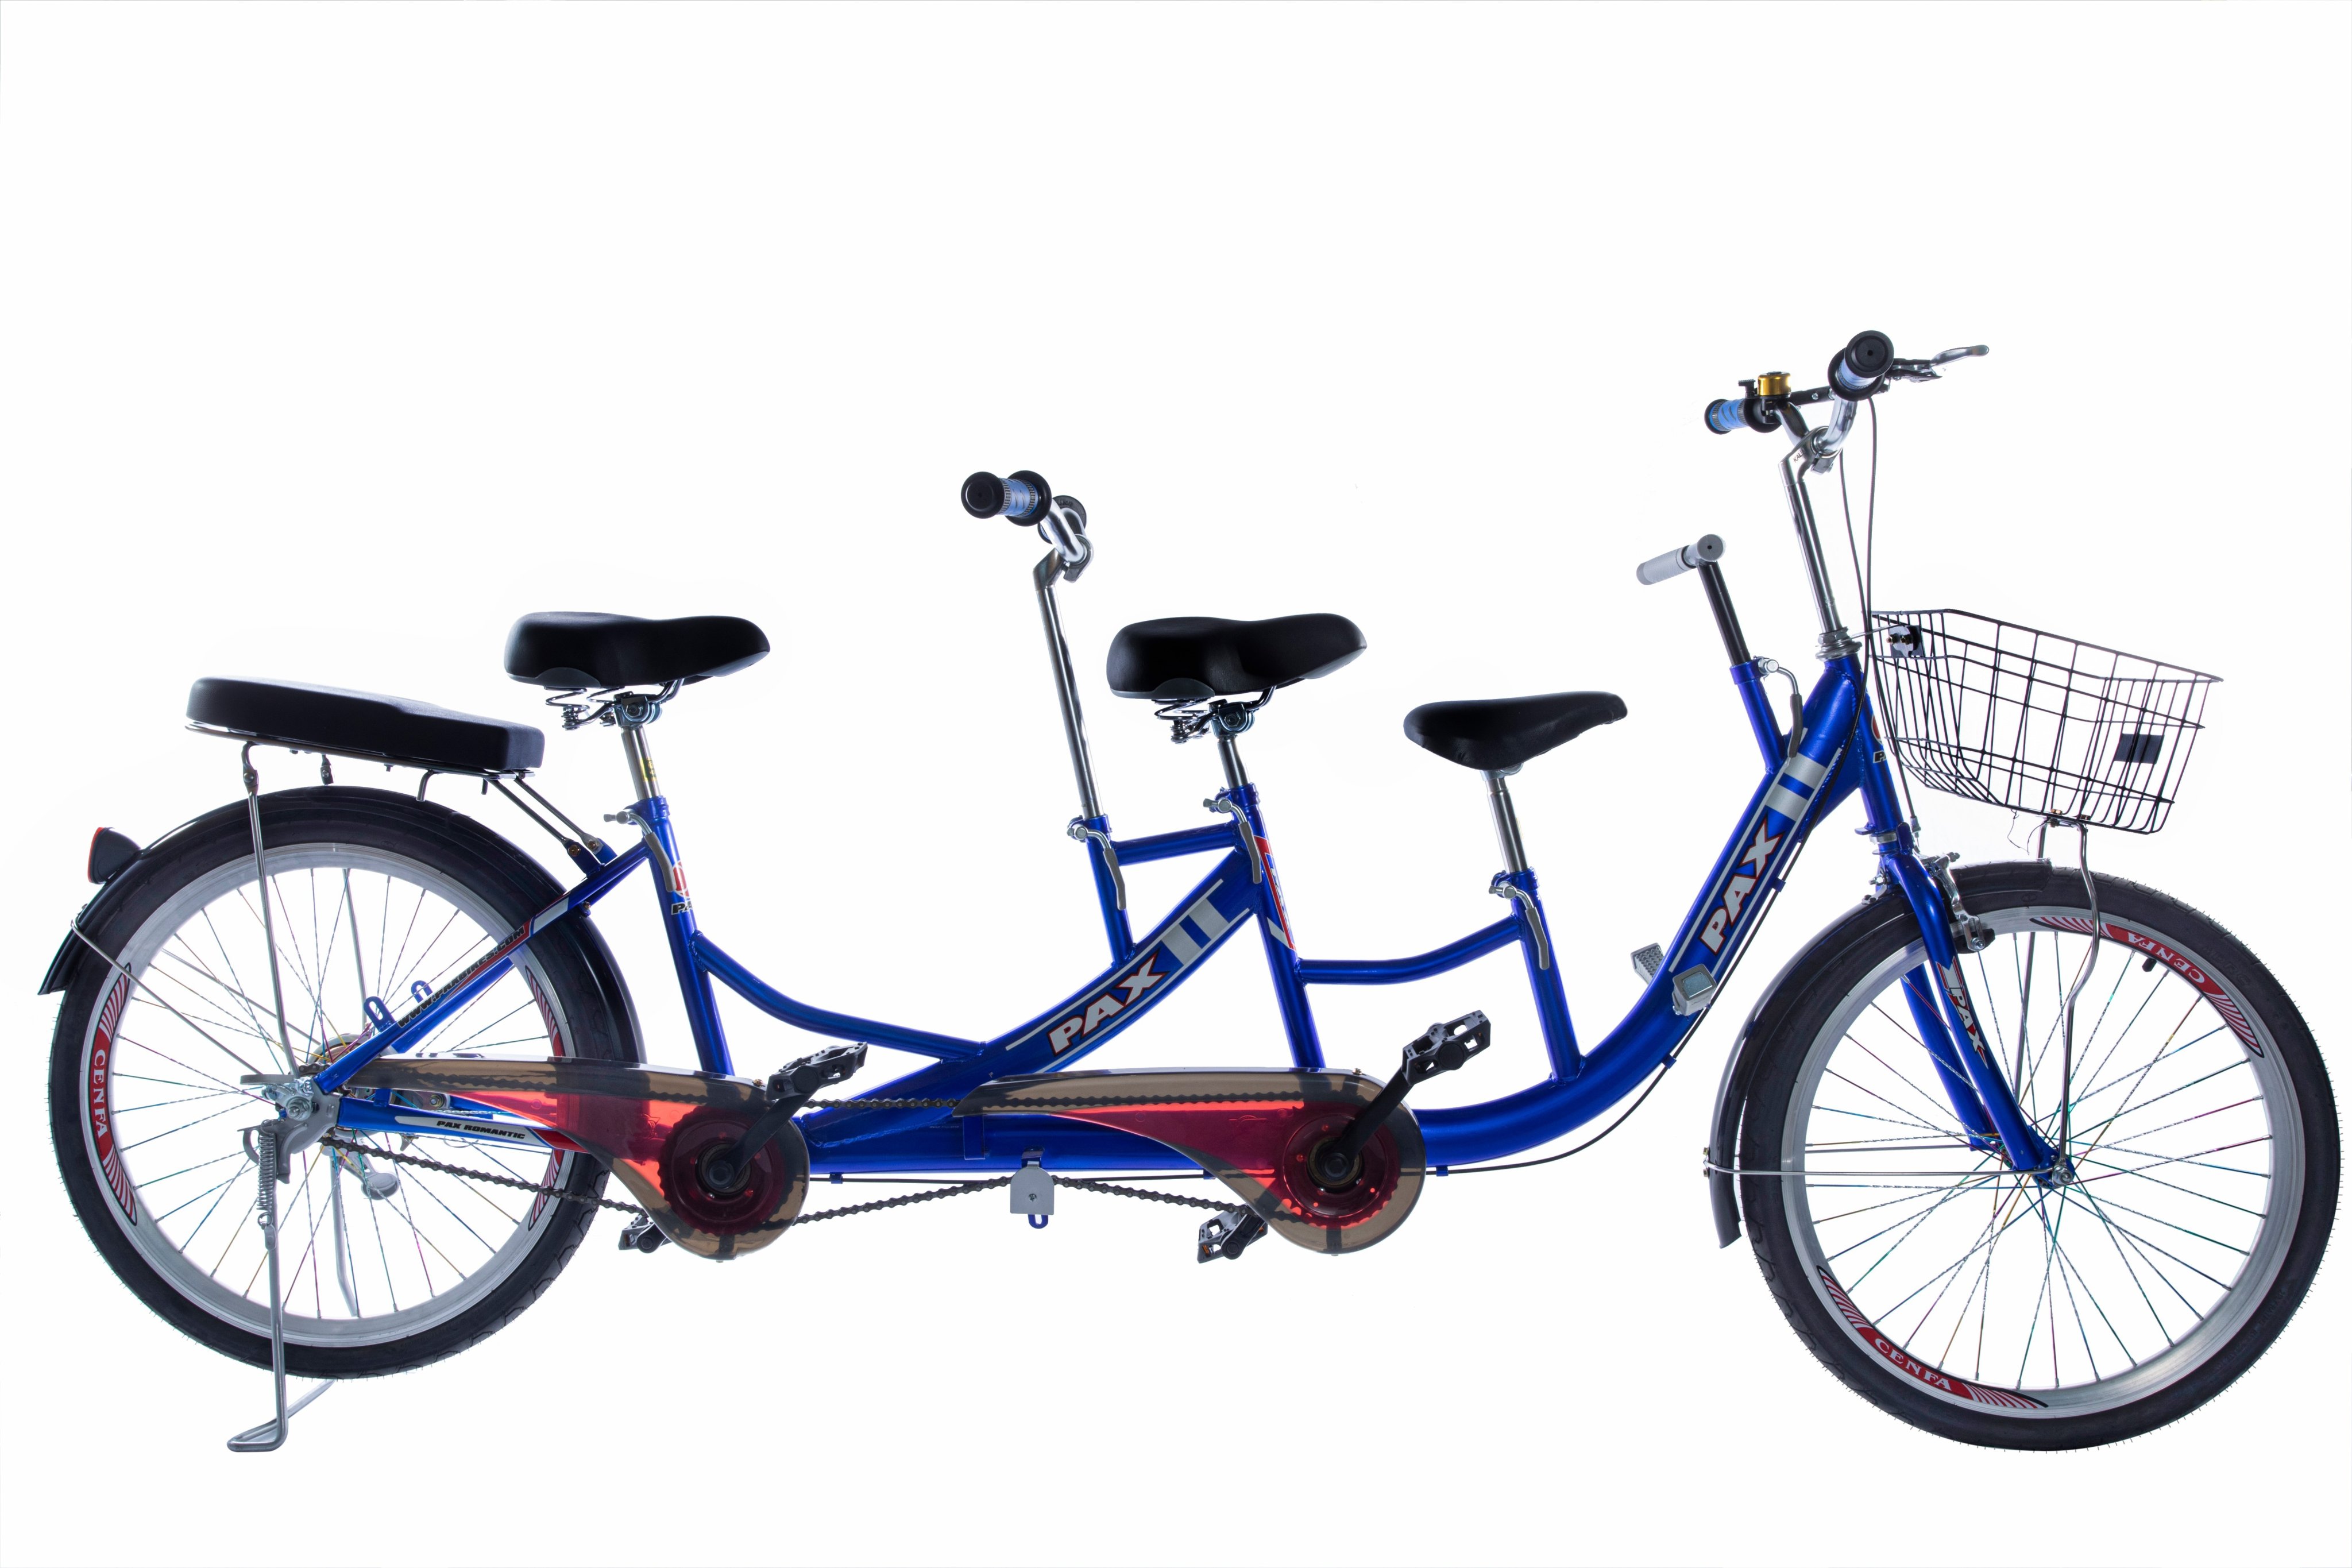 Xe đạp đôi gia đình cao cấp PAX 2 Sport - Kiểu dáng thể thao - Hai người đạp tự do - Trọng tải 300kg - Có thêm ghế cho bé